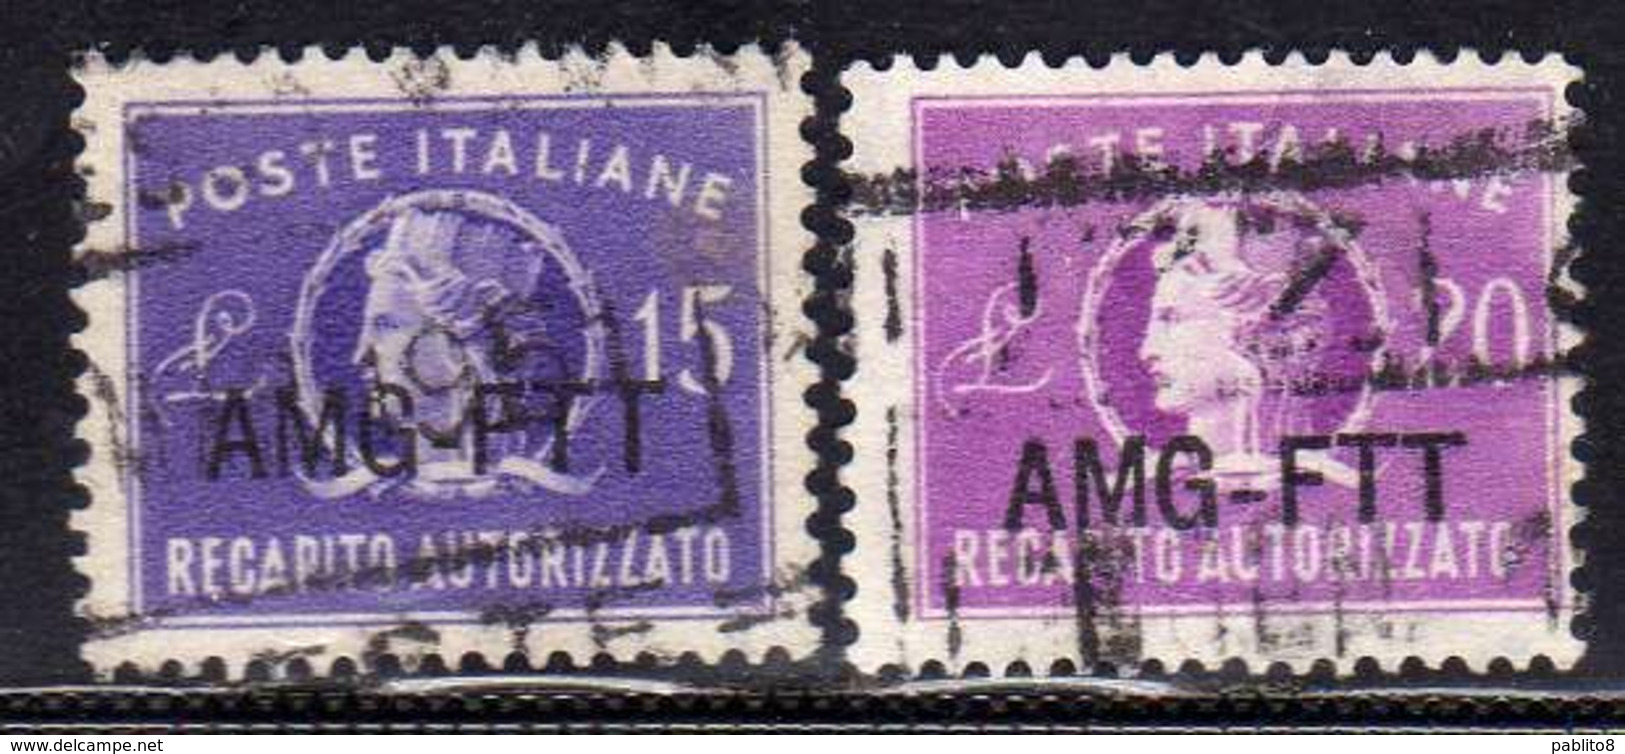 TRIESTE A 1949 1952 AMG - FTT ITALIA ITALY OVERPRINTED RECAPITO AUTORIZZATO LIRE 15+20 SERIE COMPLETA USATA USED OBLITER - Steuermarken